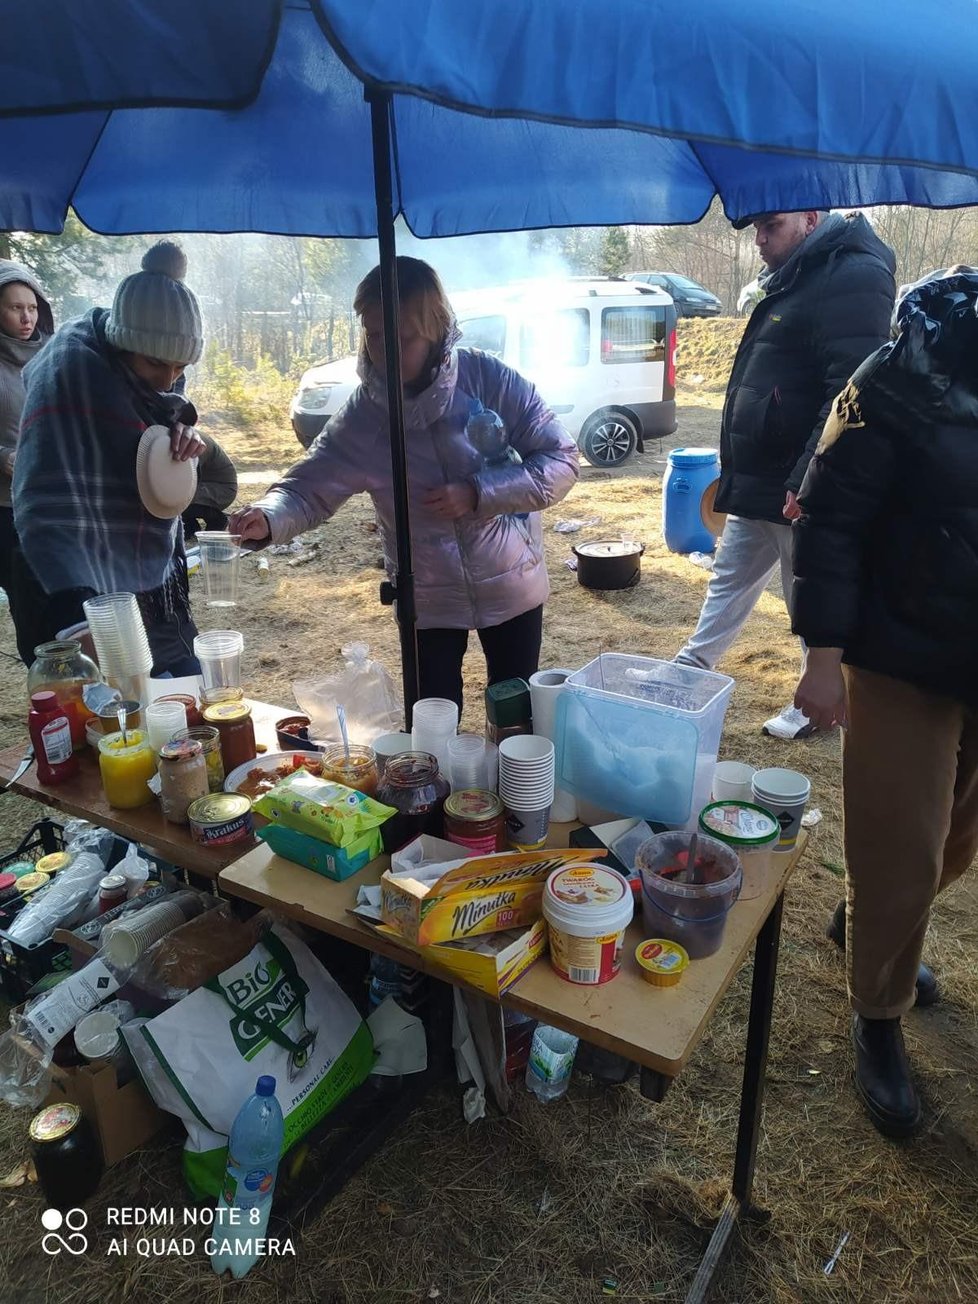 Situace na nejmenší ukrajinsko-polské hranici Hrušiv/Budimierz. Dobrovolníci a místní dodávají potraviny, vaří, navzájem si pomáhají i uprchlíci.